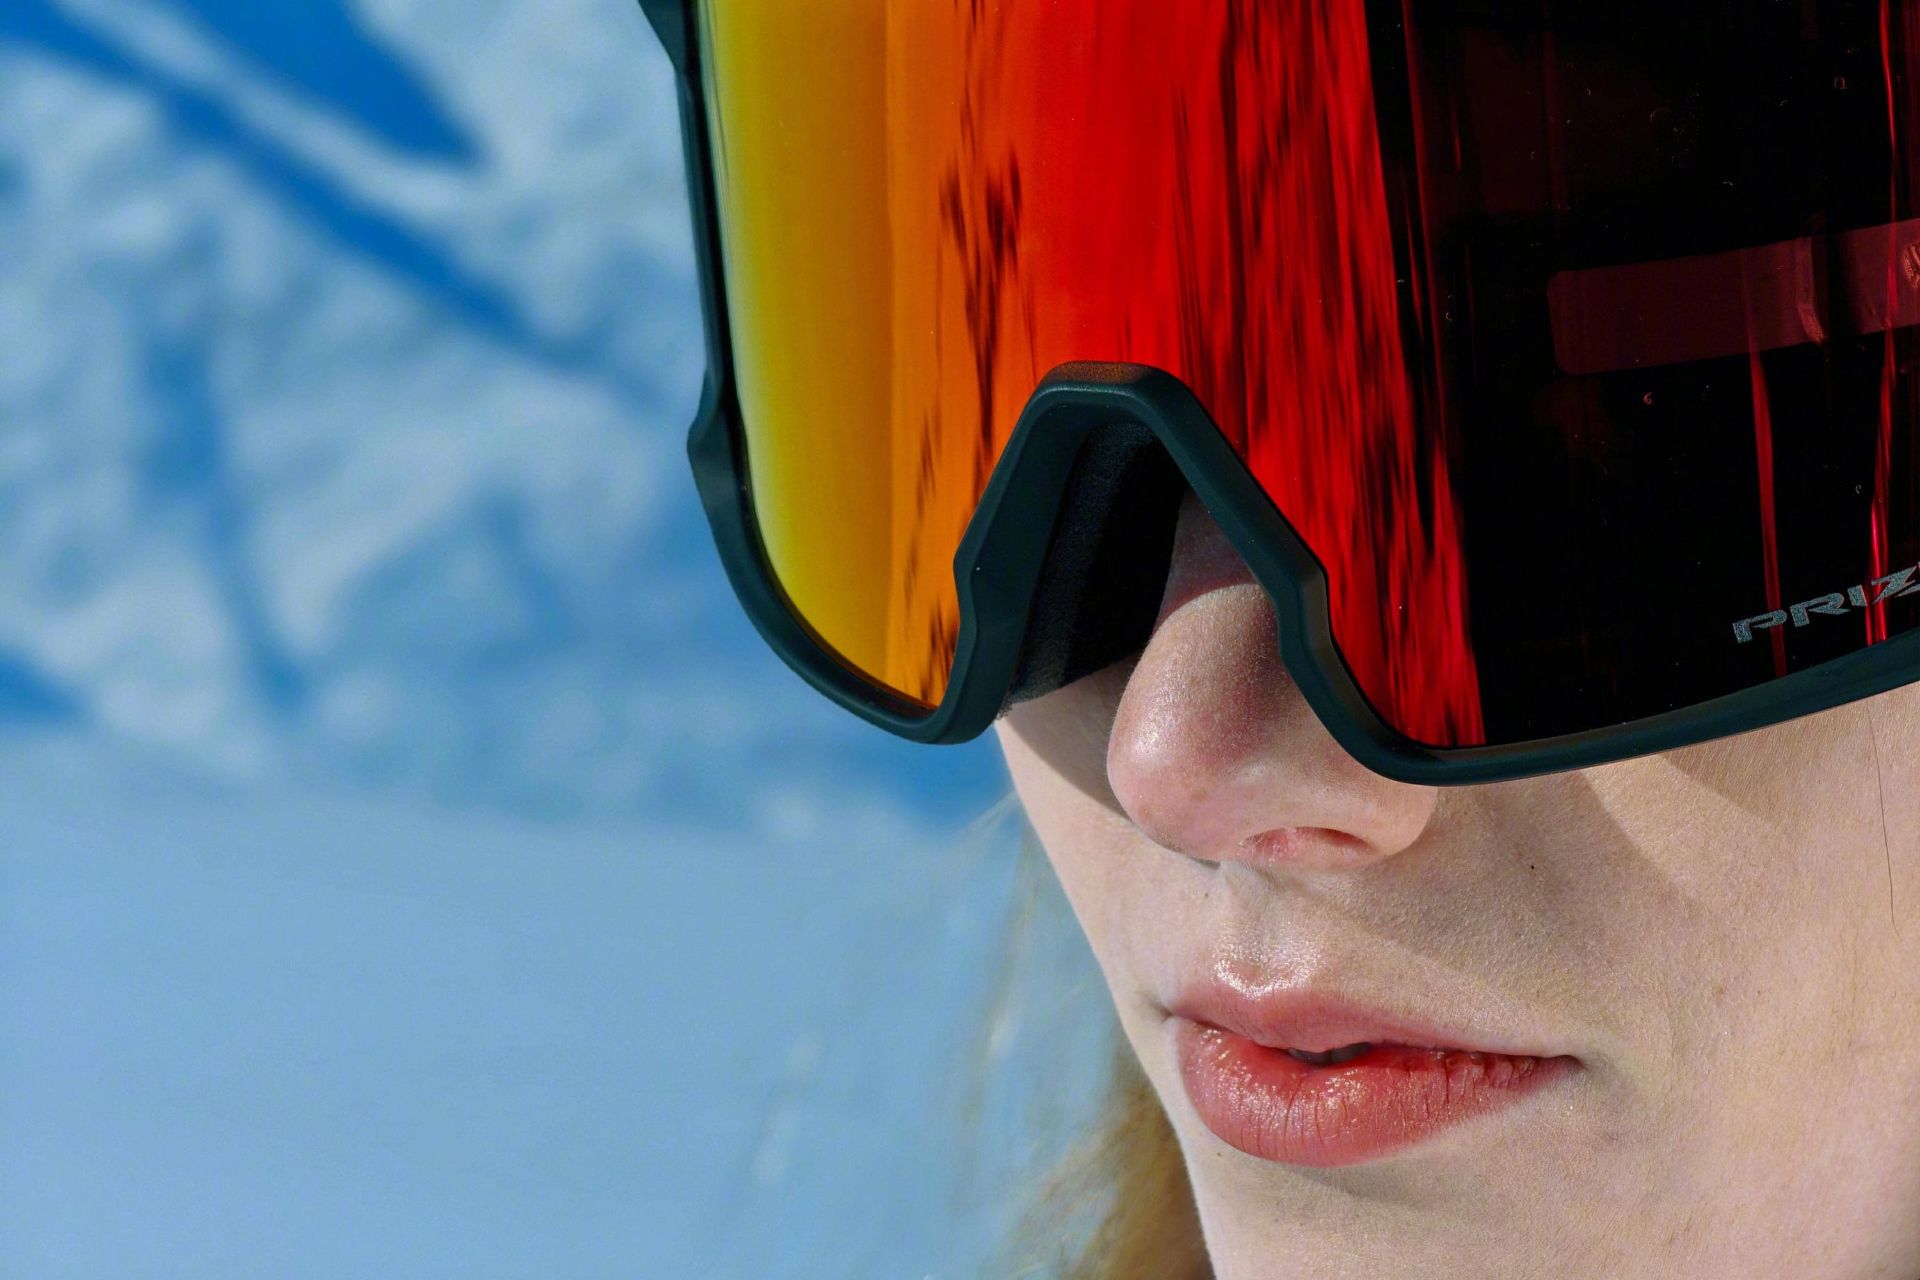 نمونه عکس‌ گرفته شده با دوربین گوشی اوپو فایند ‌X7 اولترا زنی جوان با عینک اسکی و جزئیات مشخص از بافت پوست صورتش